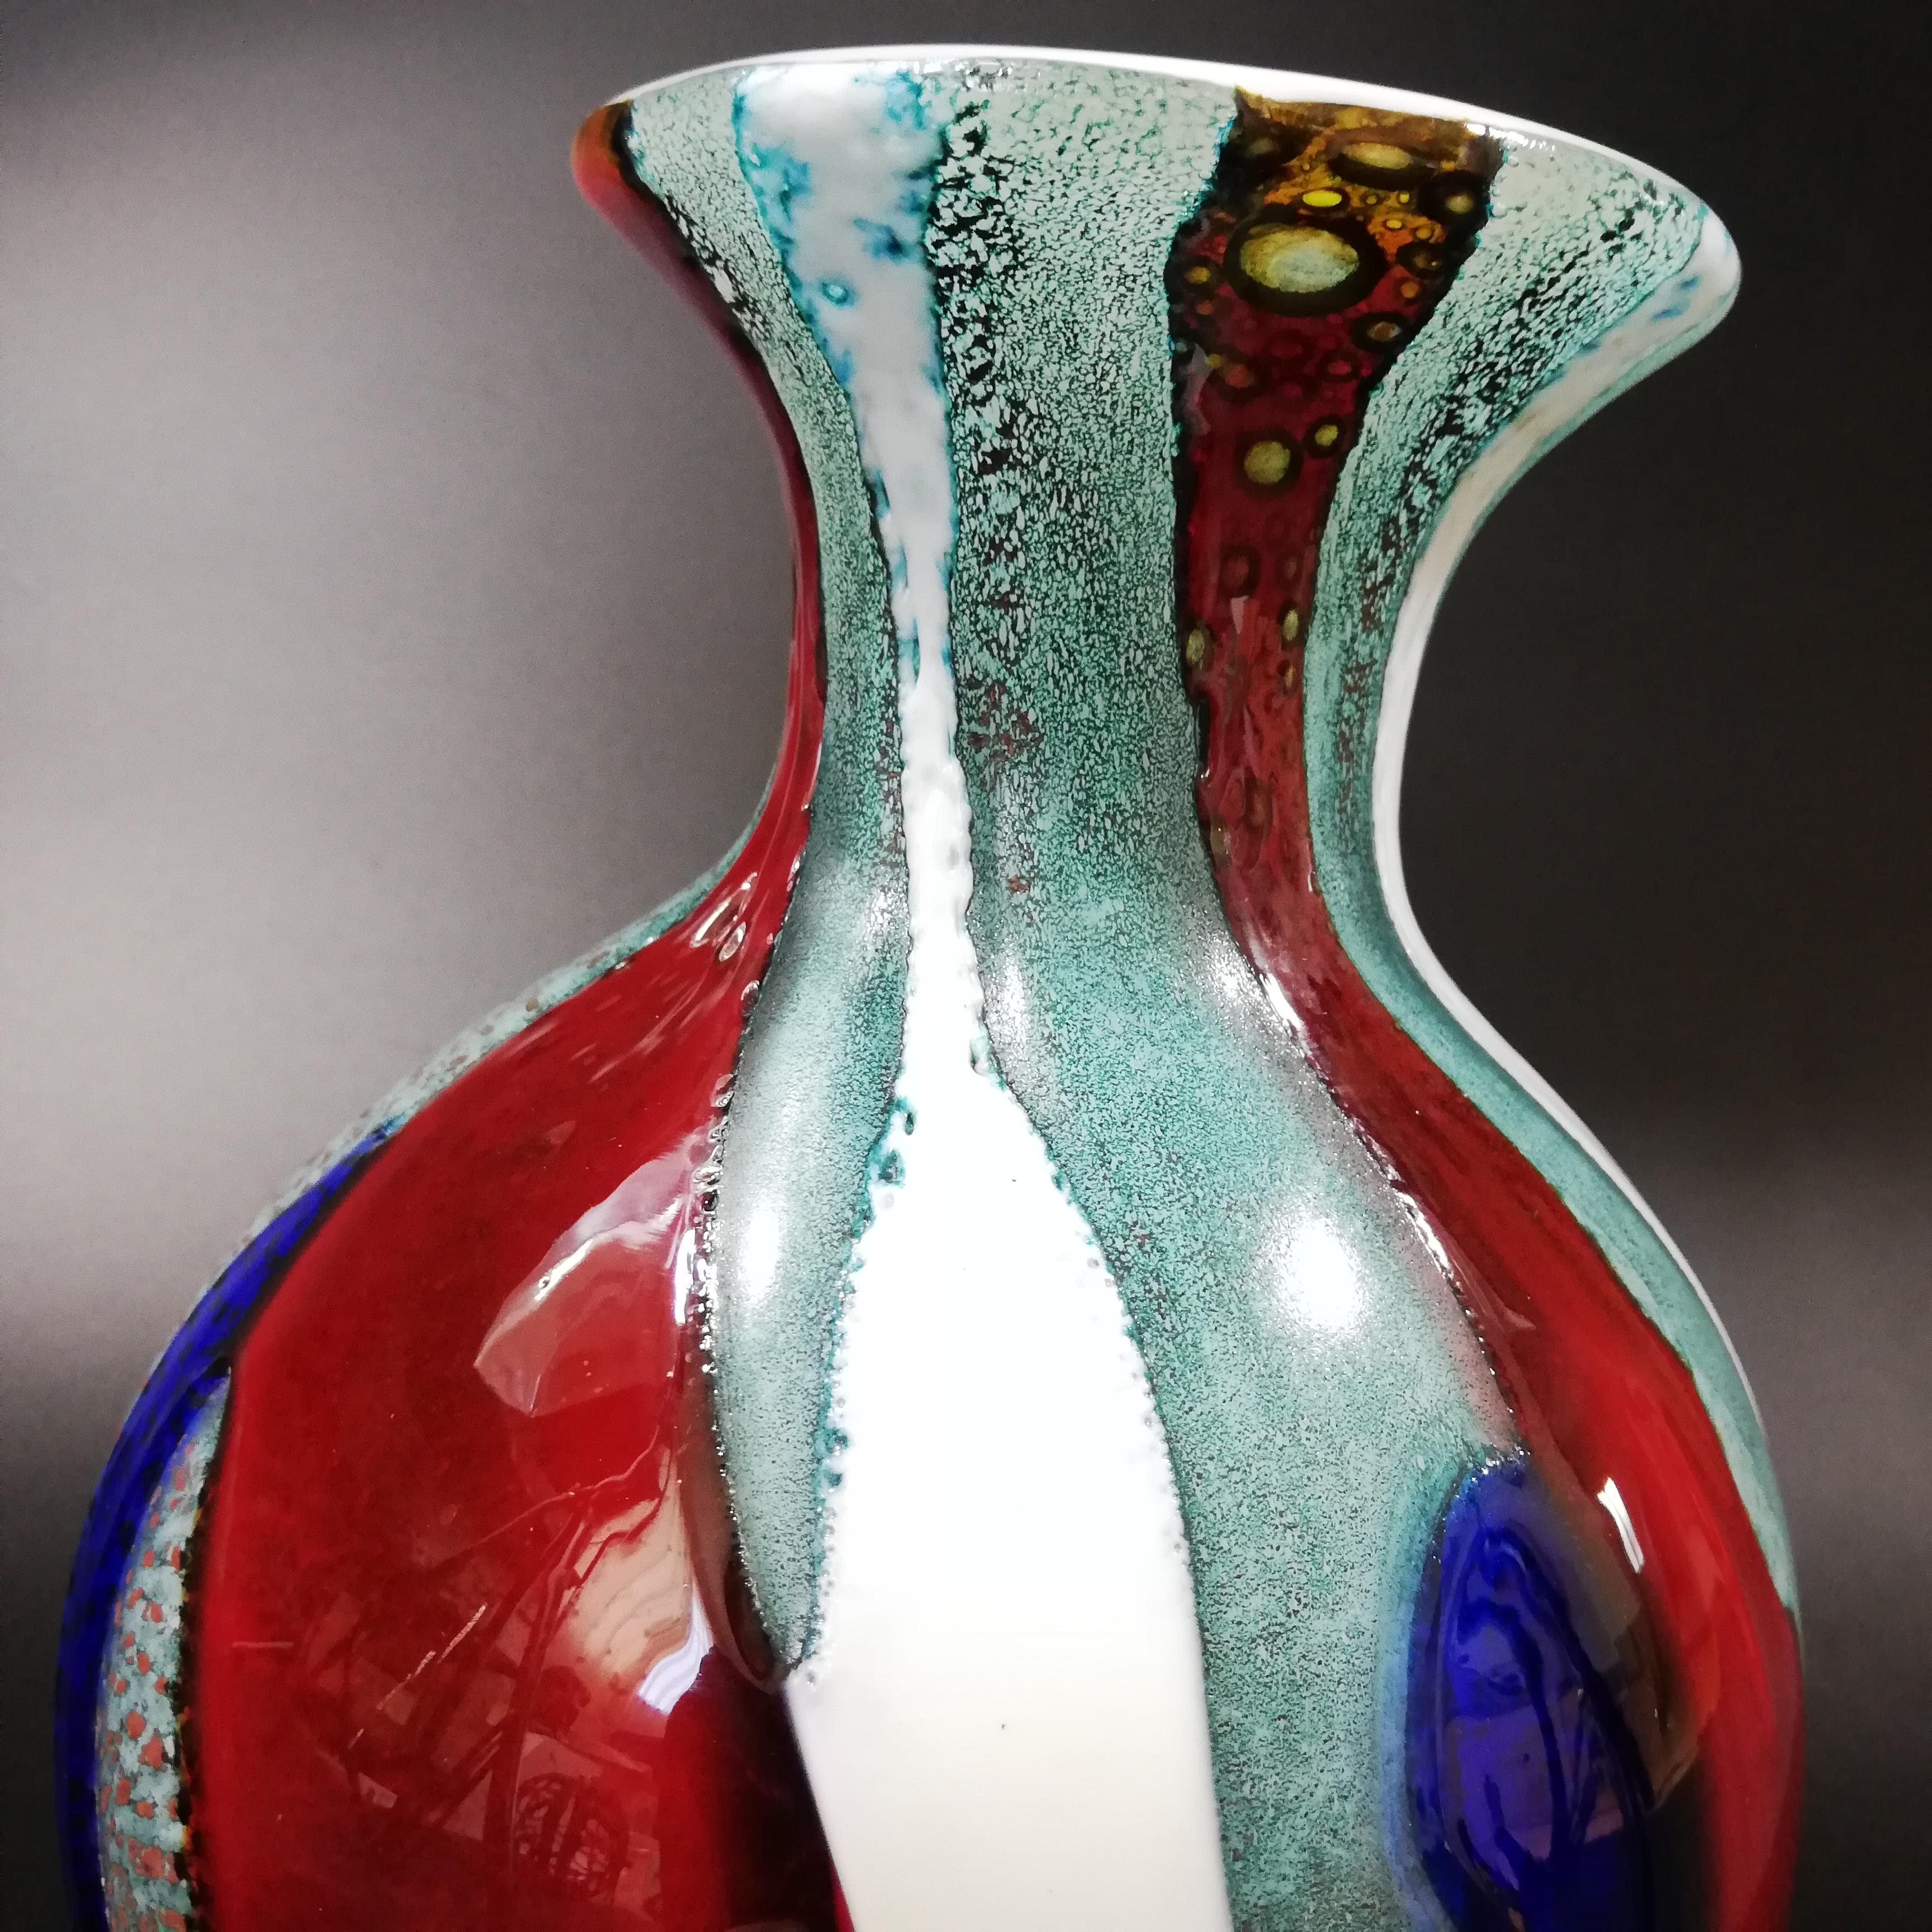 日本のガラス産業を支えた「KAMEI GLASS OSAKA」の花瓶をご紹介いたします | BASE Mag.